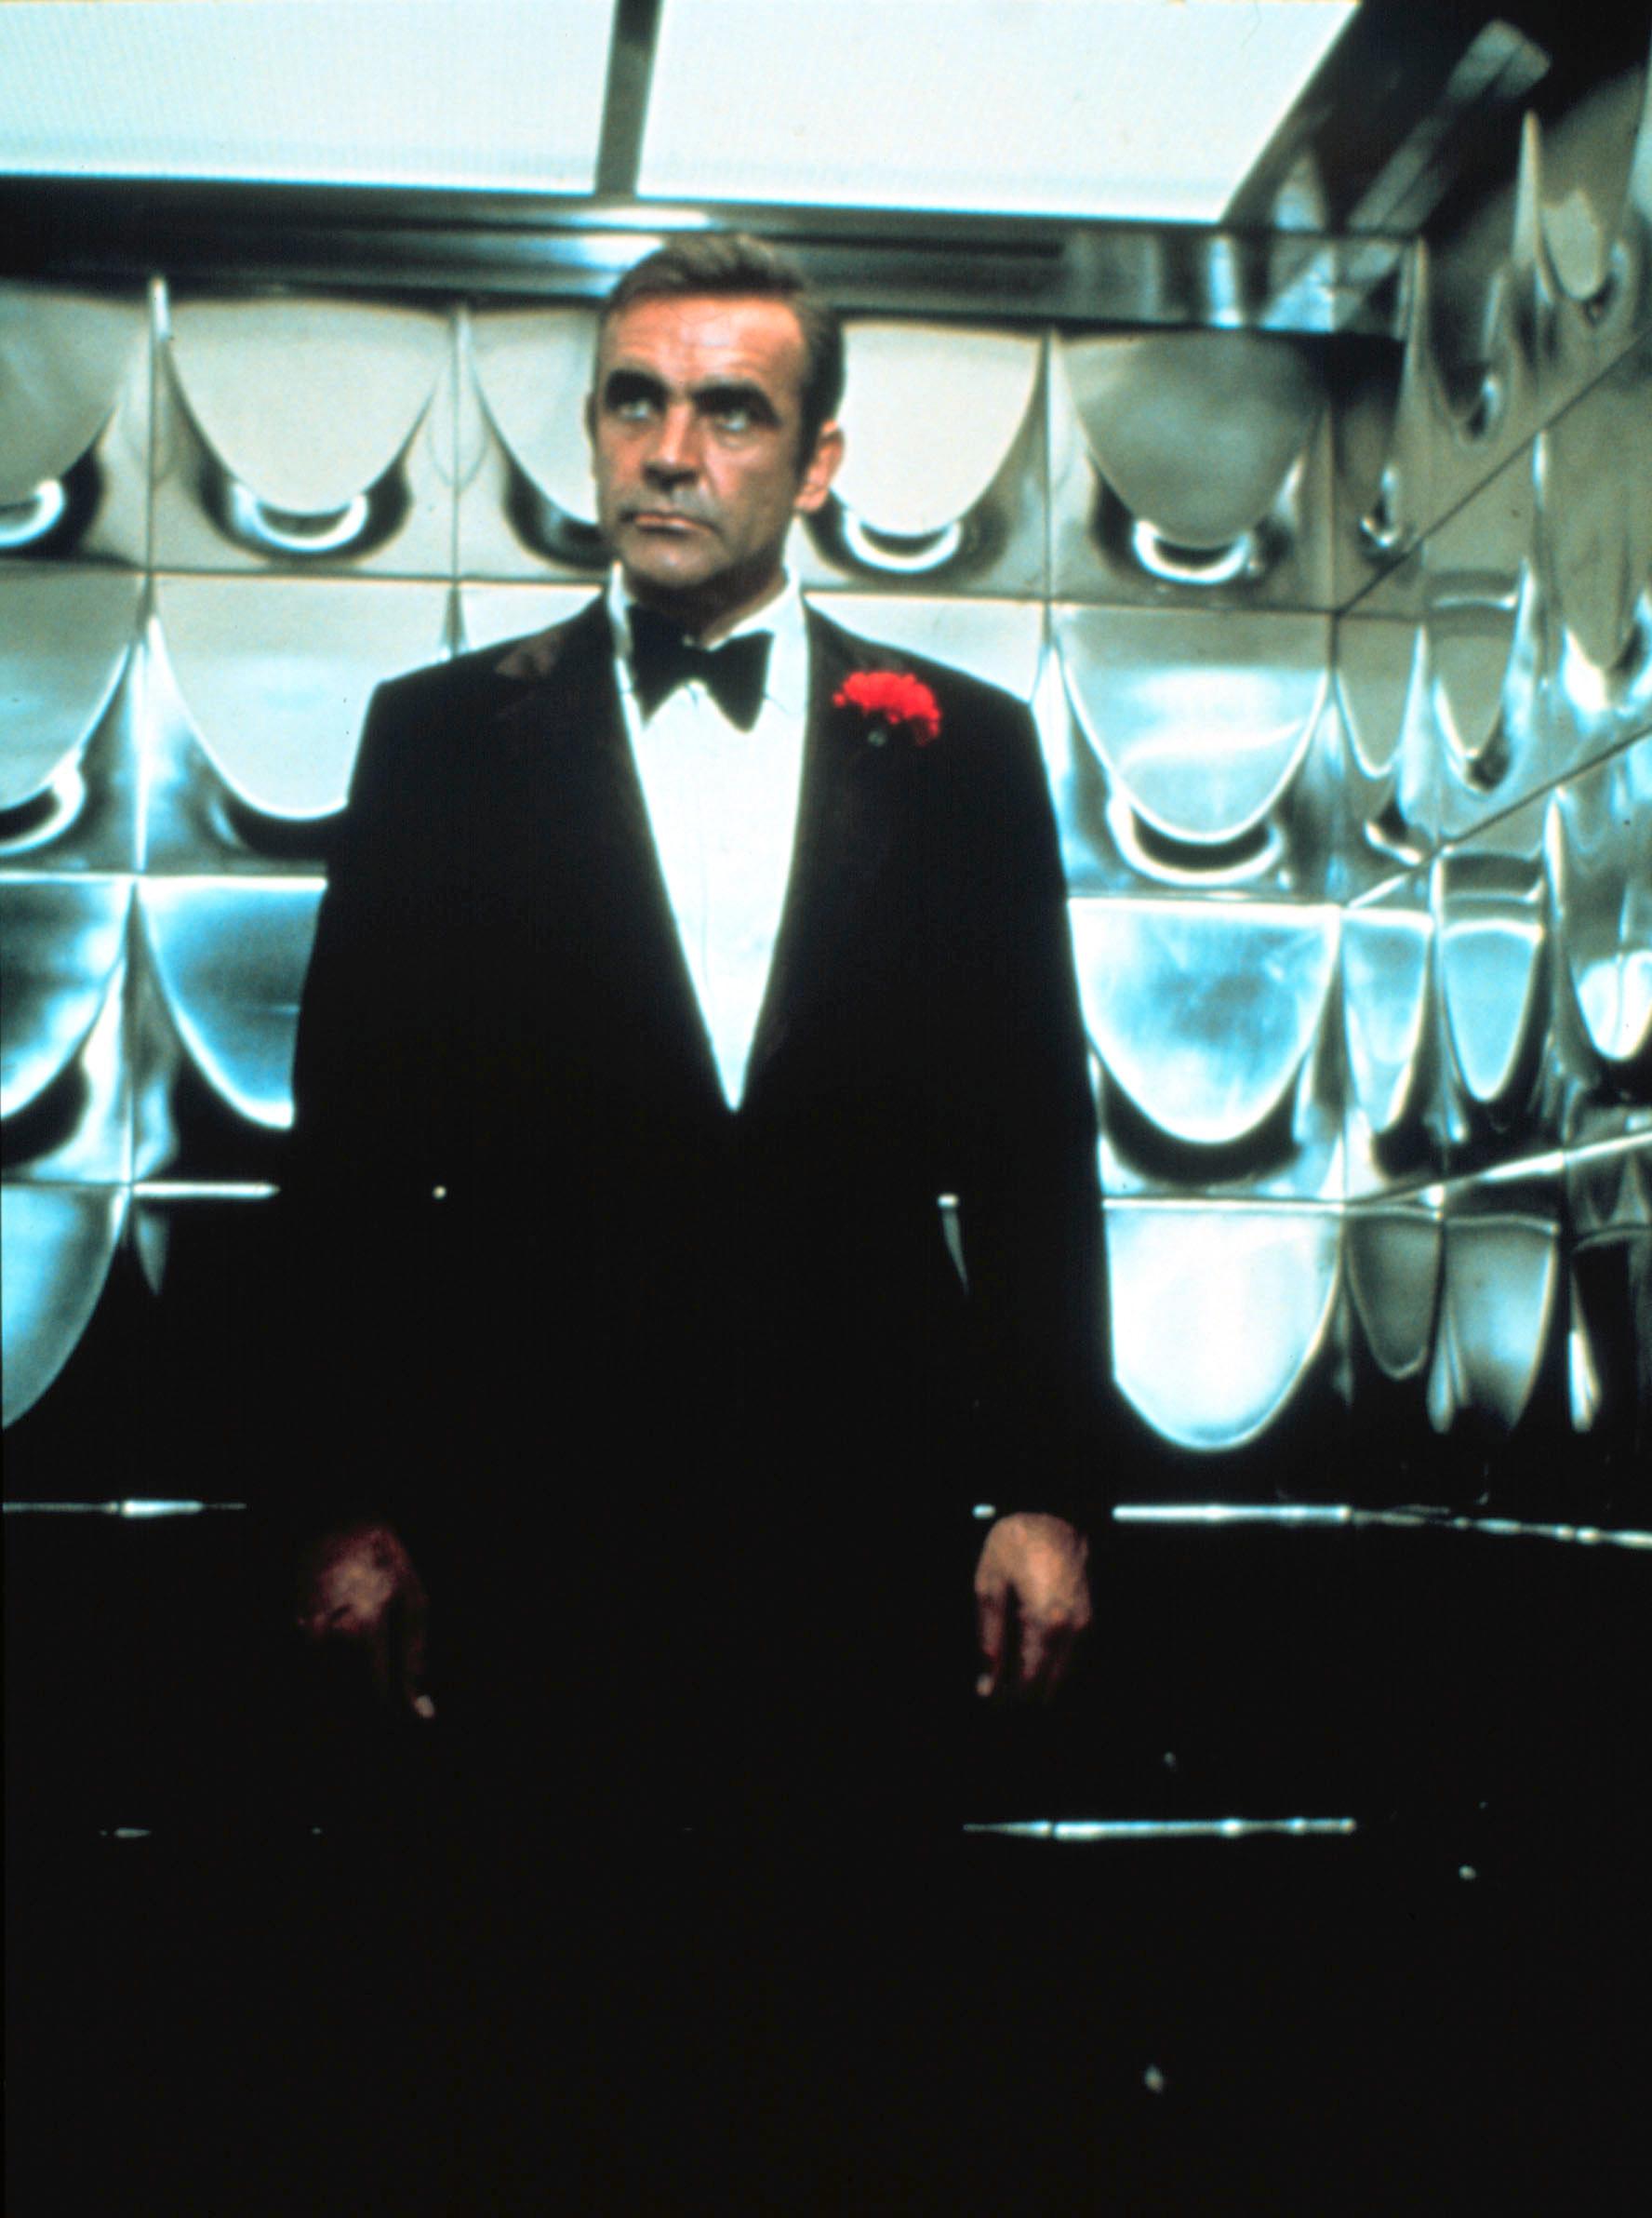 Sean Connery i ”Diamantfeber” från 1971.